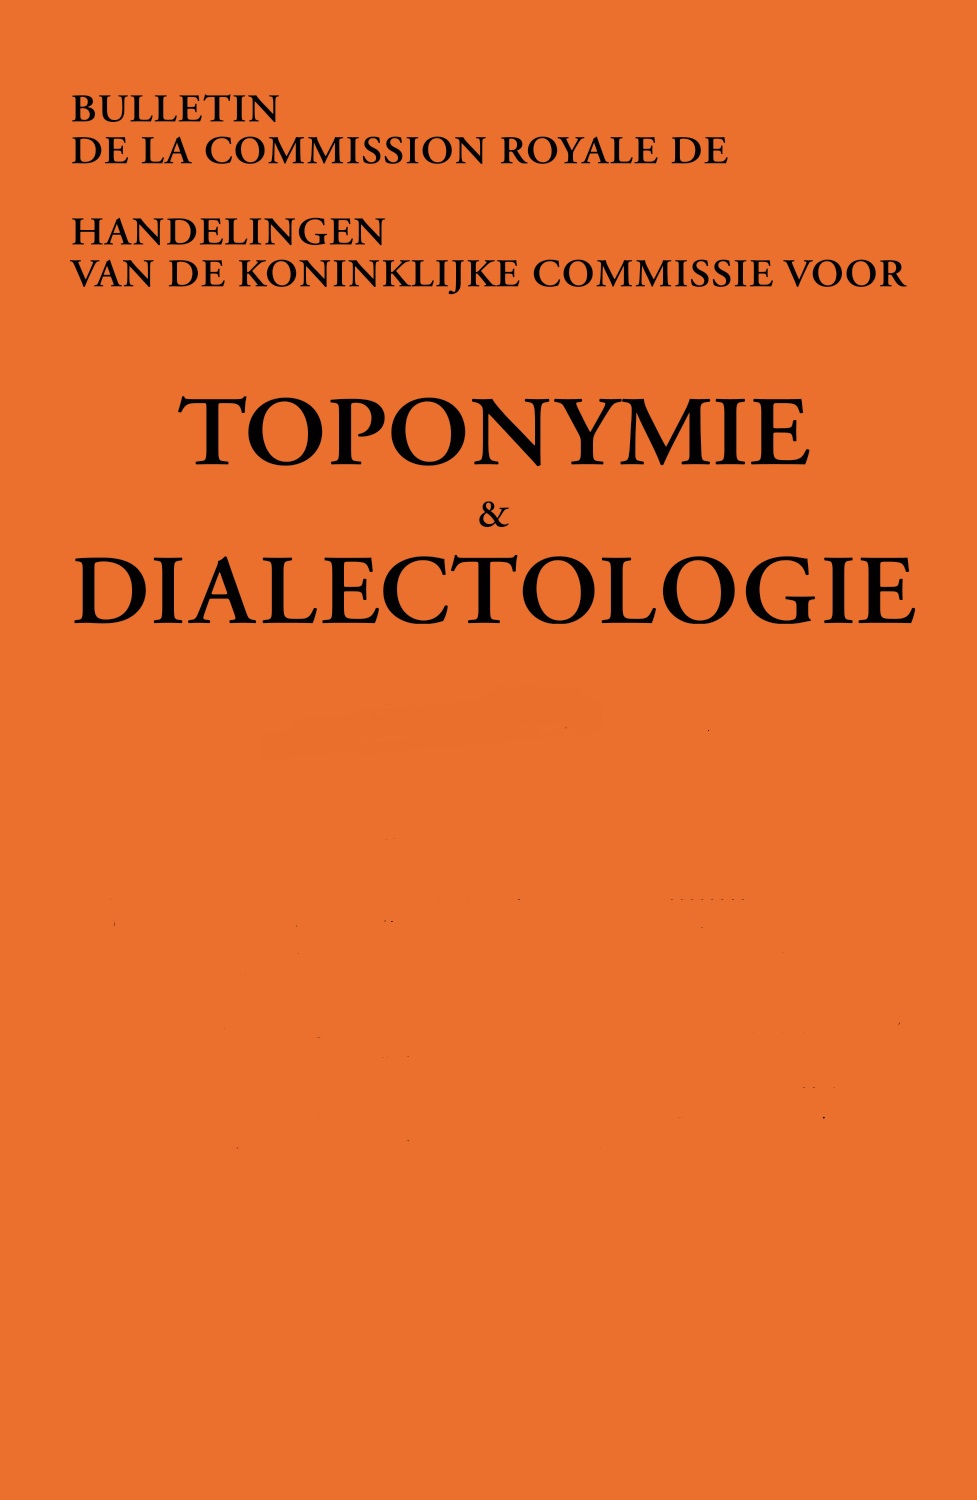 Introduction à l'anthroponymie, en particulier de la Flandre française